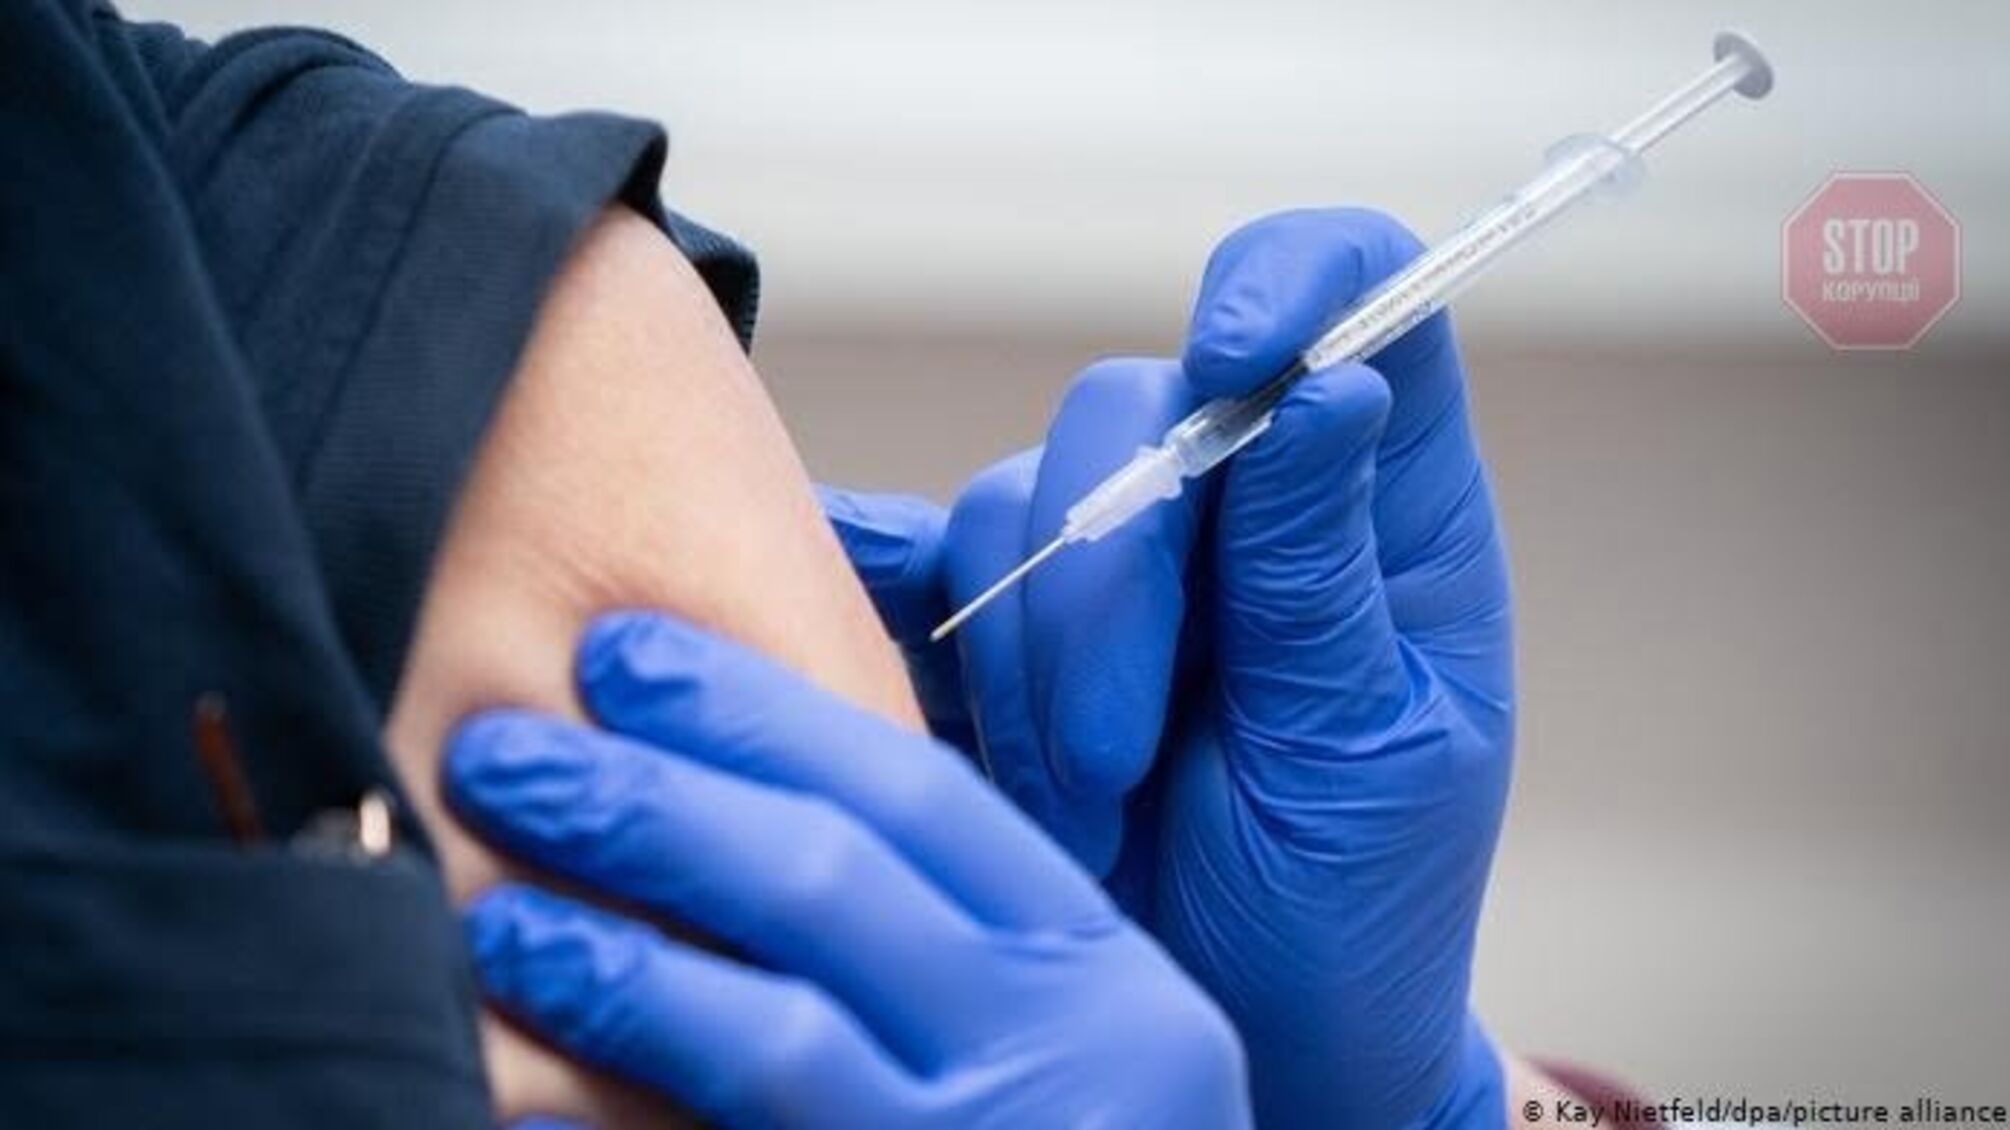 Франція вимагає від ЄС не визнавати російські та китайські вакцини проти COVID-19